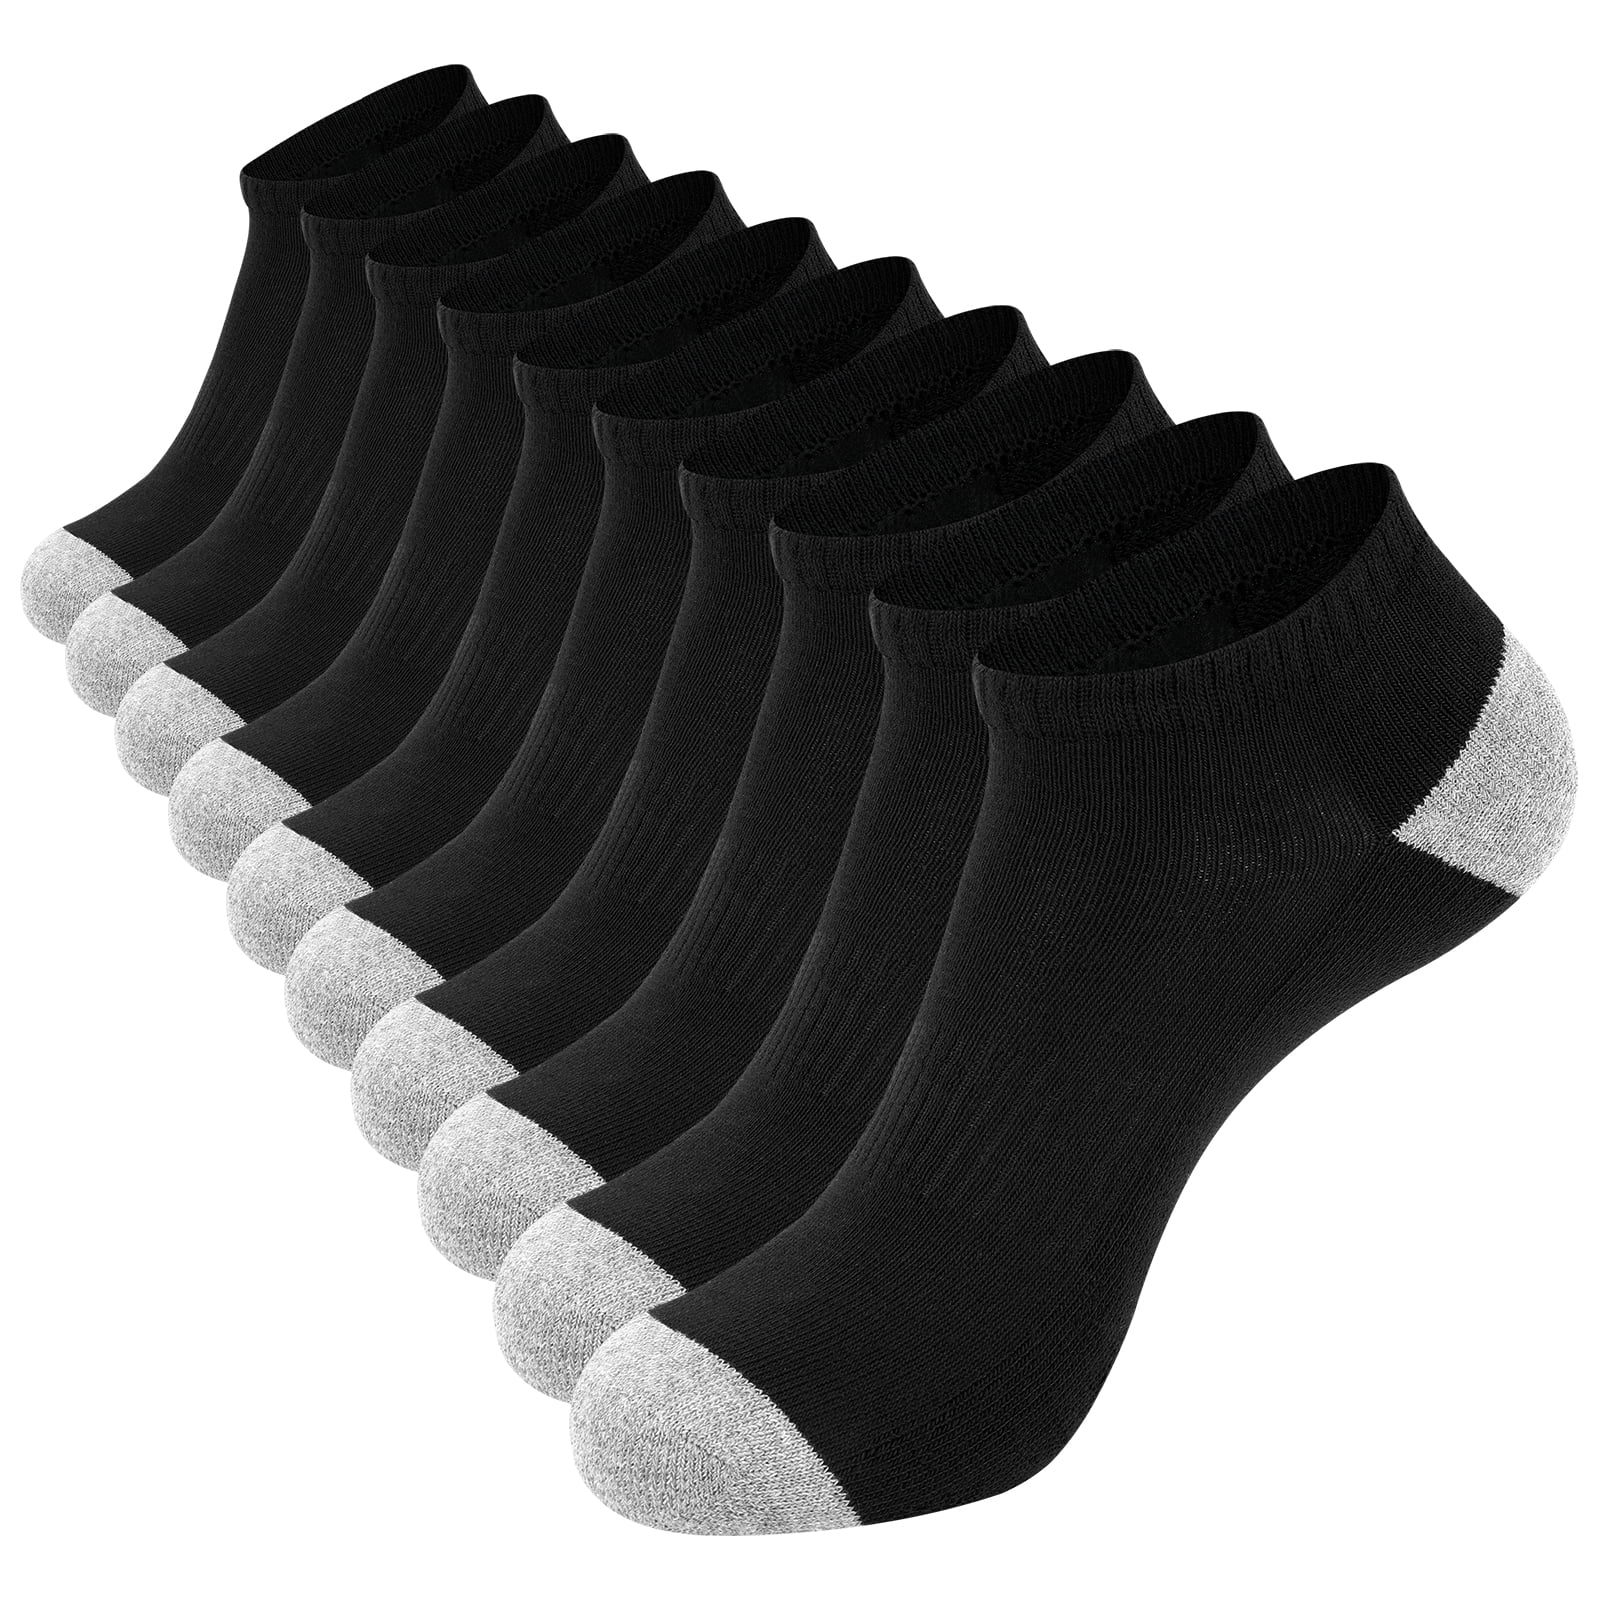 EALLCO 10 Pack Men's Breathable Low Cut Socks Ankle No Show Work Socks ...